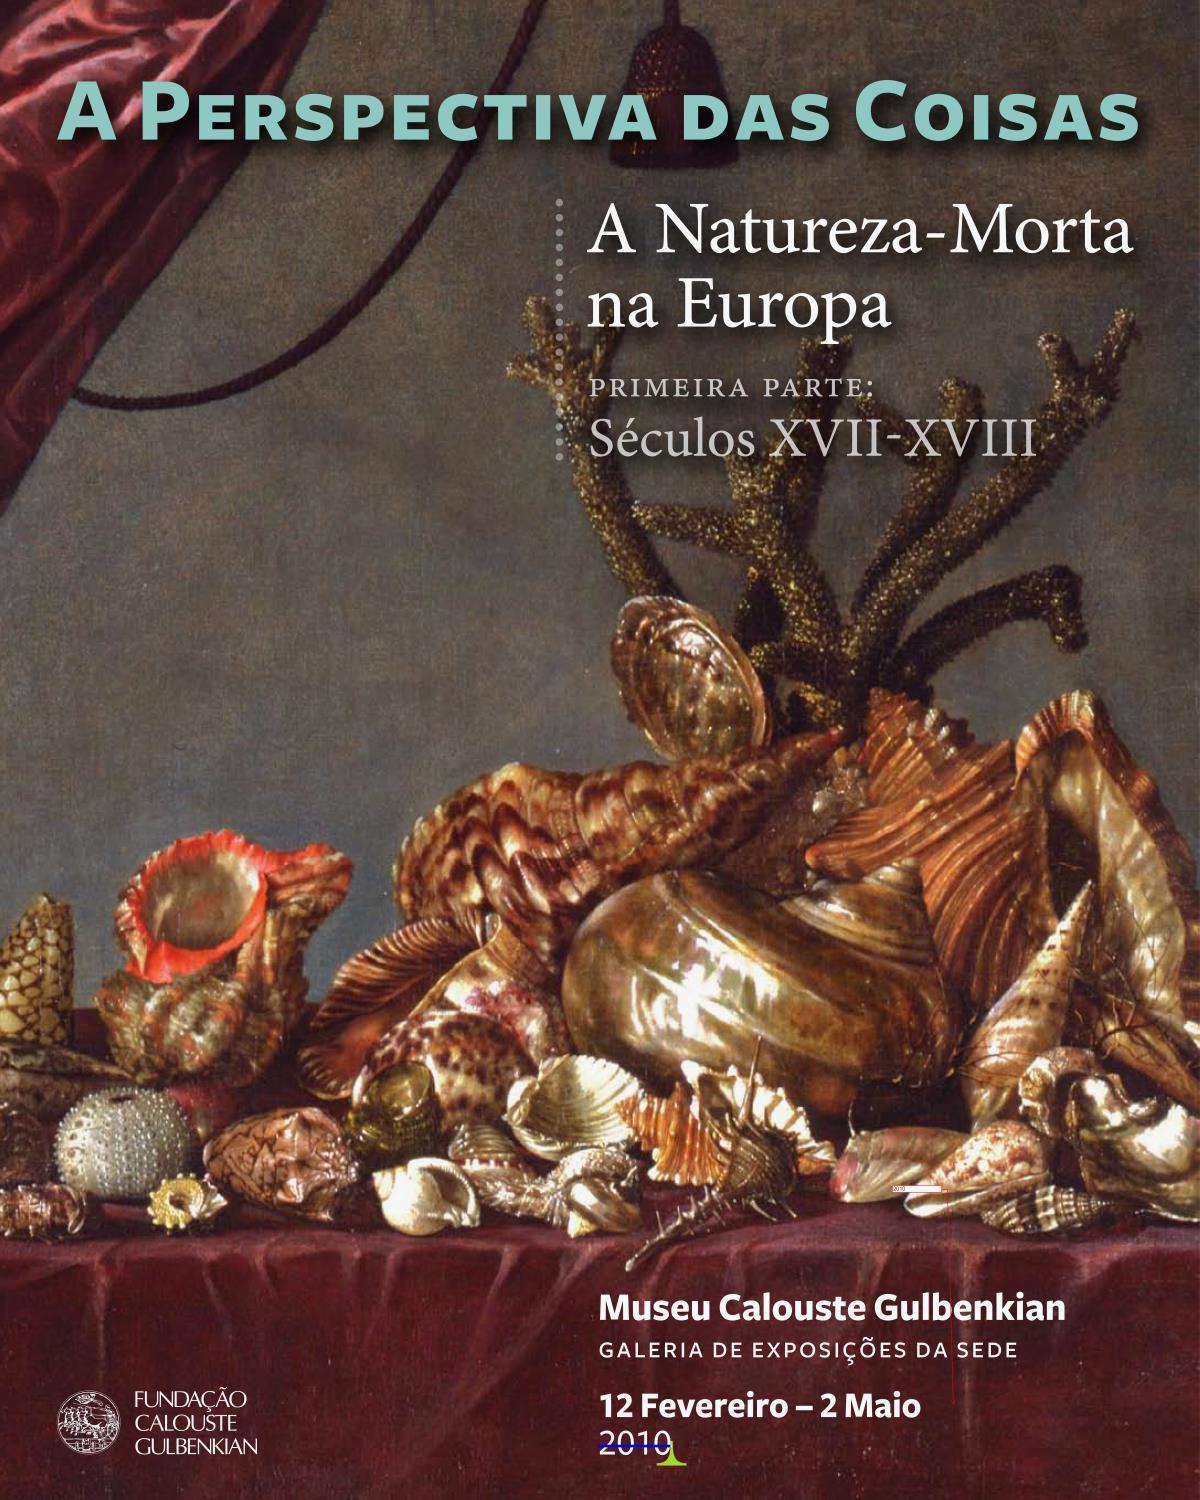 A Perspectiva das Coisas. A Natureza-Morta na Europa. Primeira Parte: Séculos XVII-XVIII